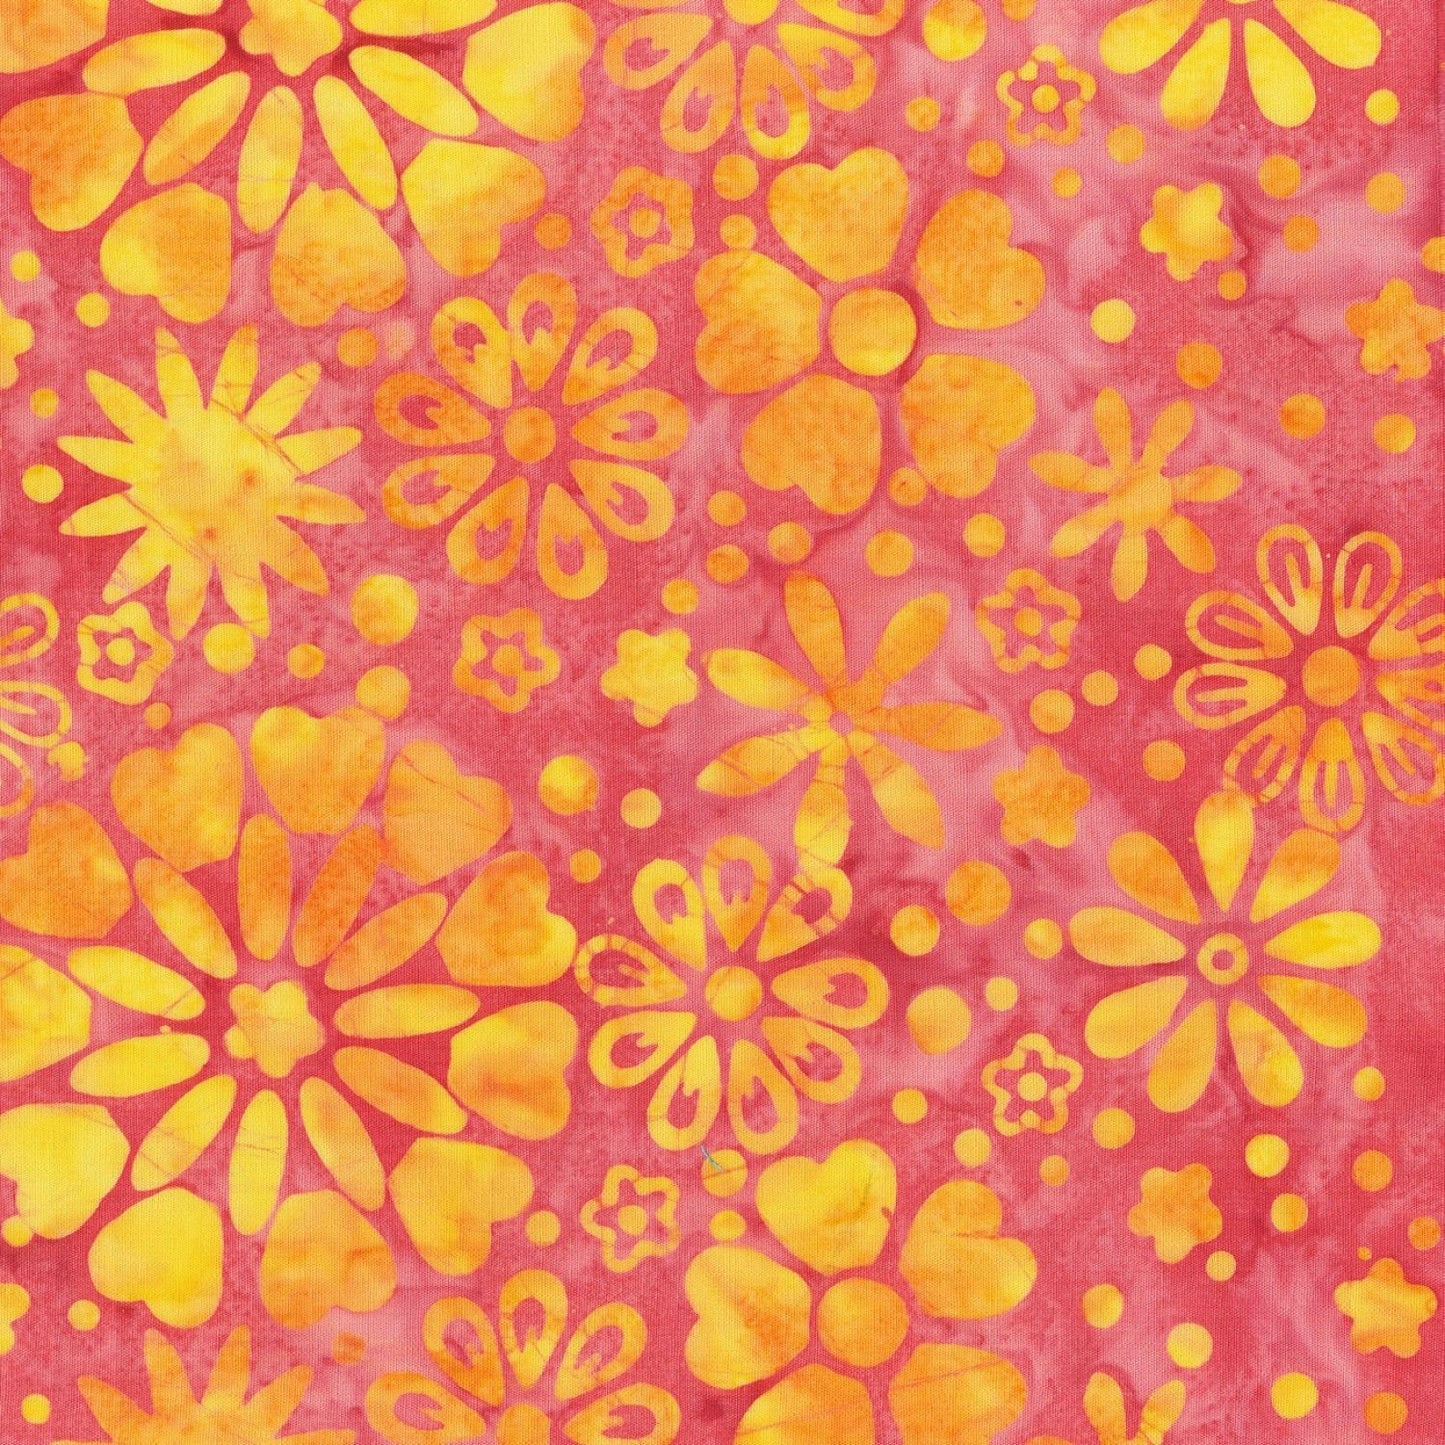 Fairy Dance Batik by Jacqueline de Jonge Pink Batik 3040Q-X Cotton Woven Fabric